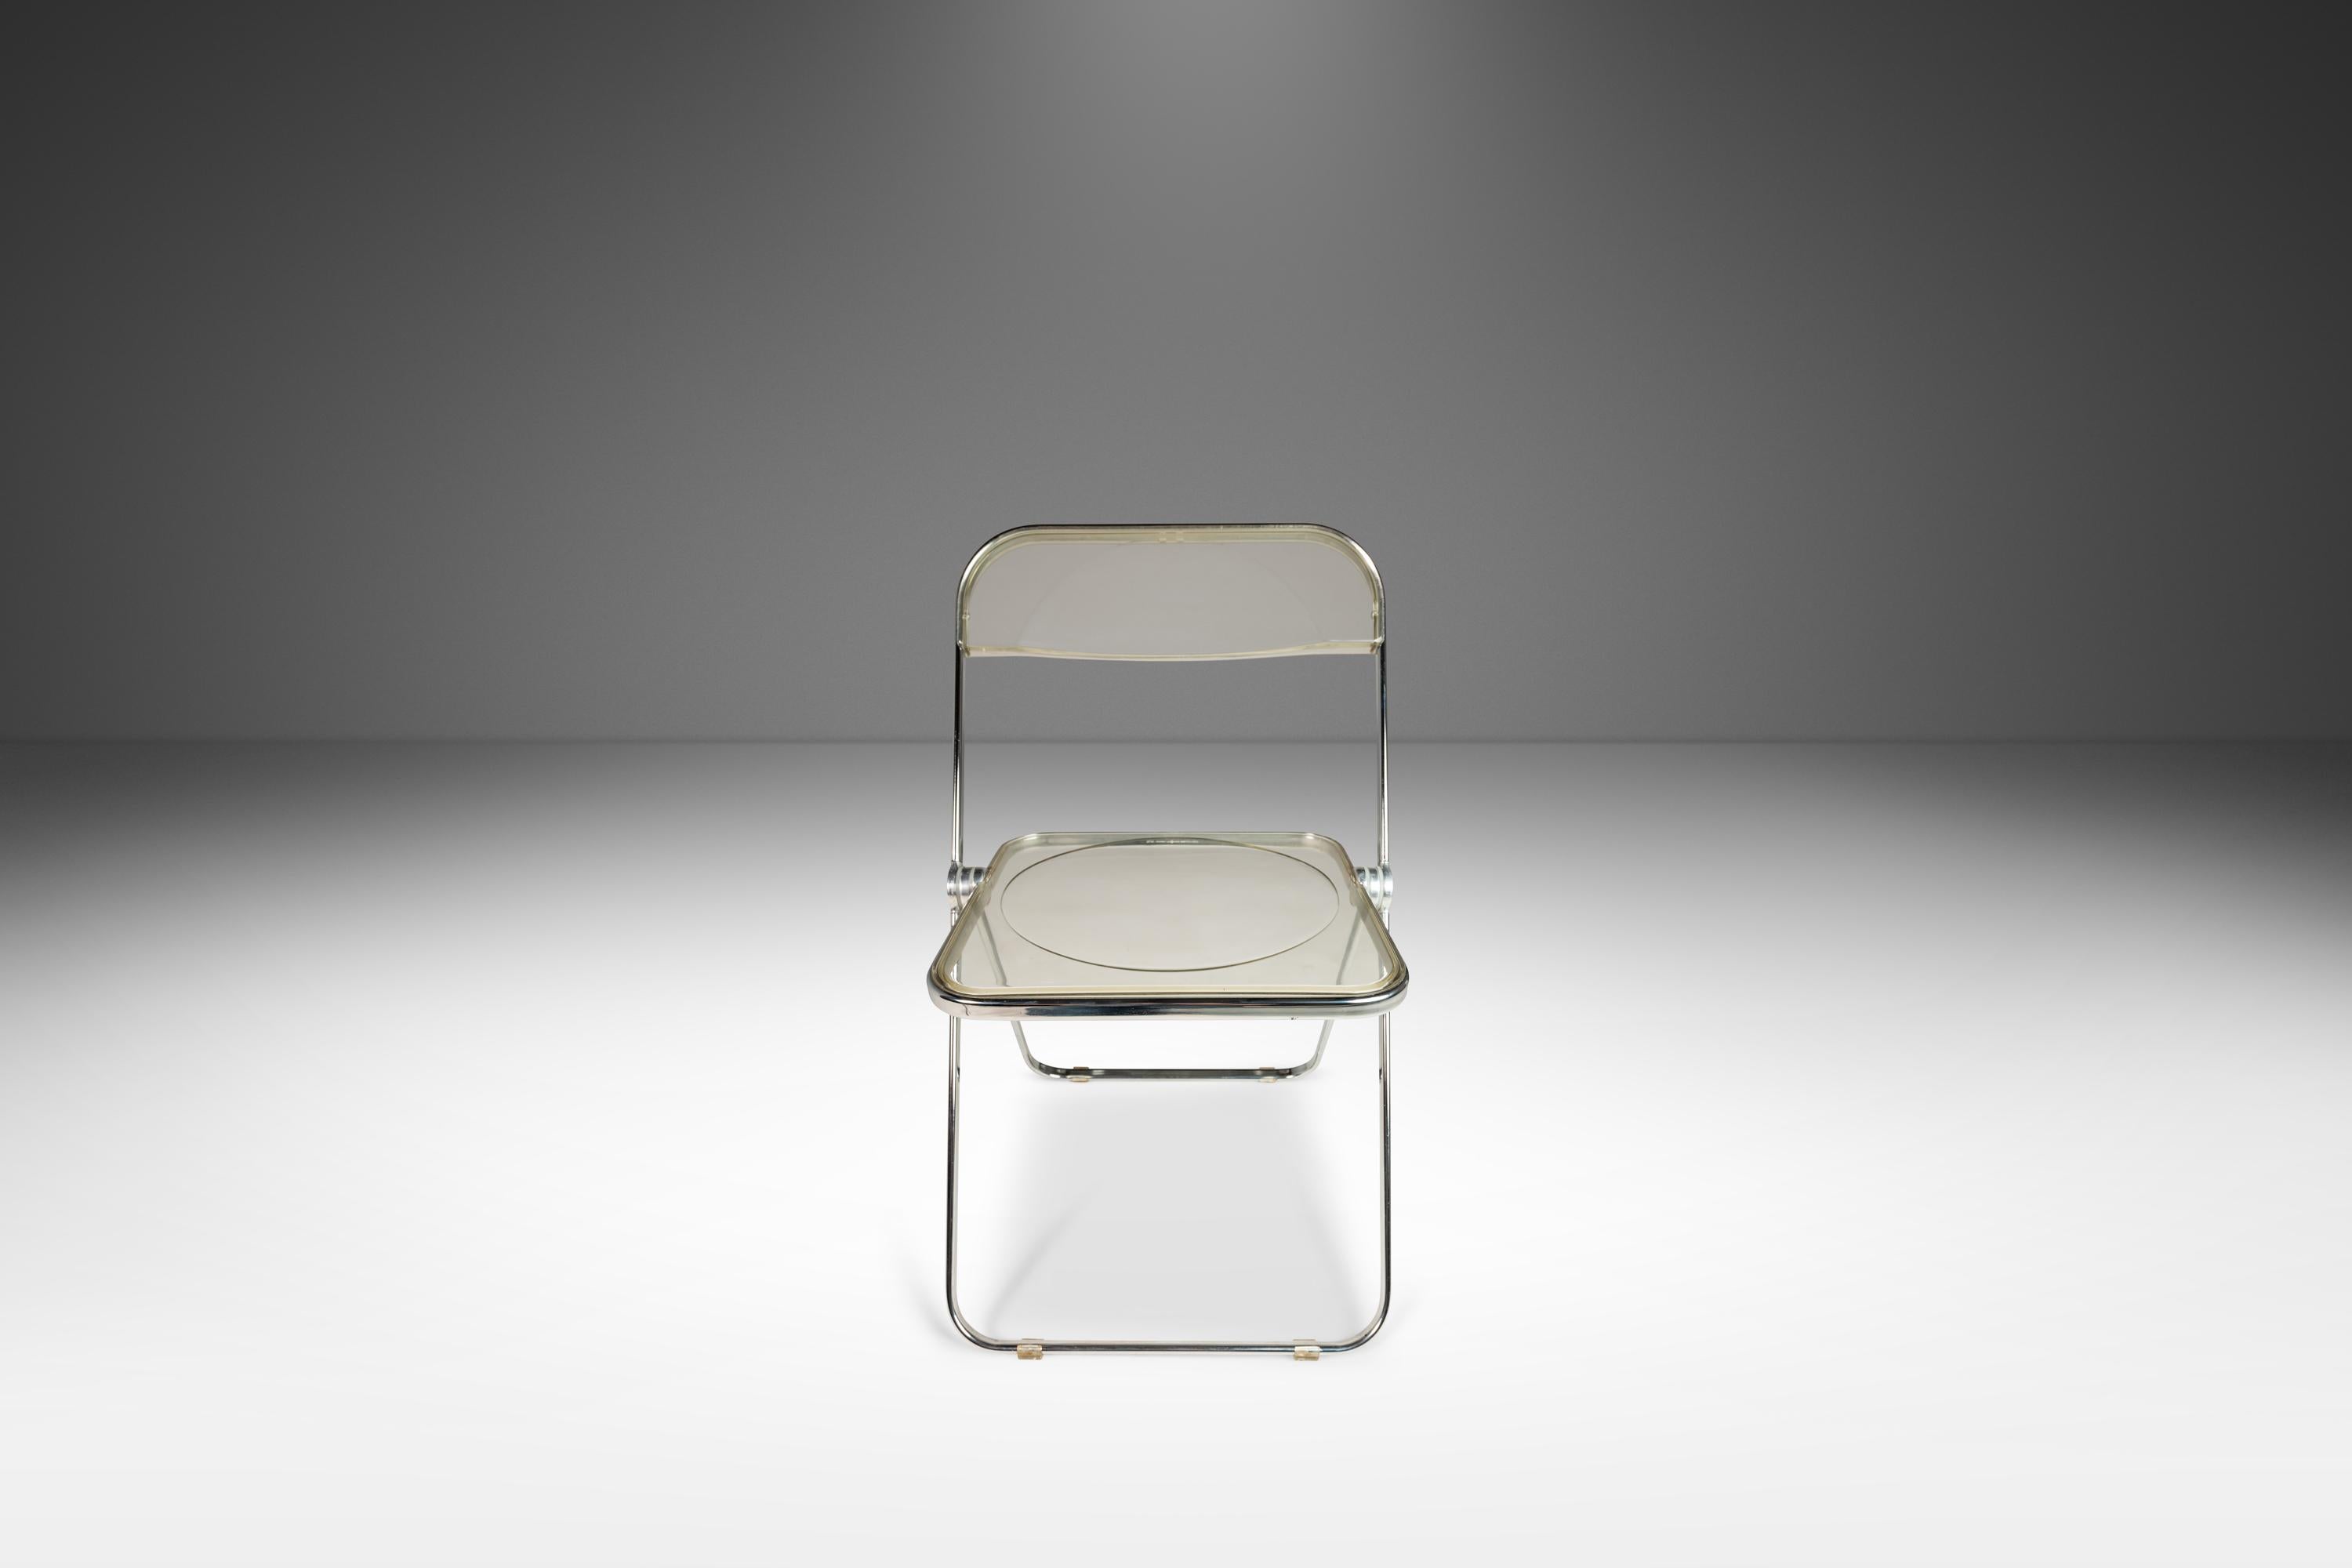 La chaise pliante Plia est une véritable icône. Conçue à l'origine en 1967 par Giancarlo Piretti pour la vénérable société Anonima Castelli, la chaise Plia est toujours en production aujourd'hui et constitue un élément essentiel du design moderne